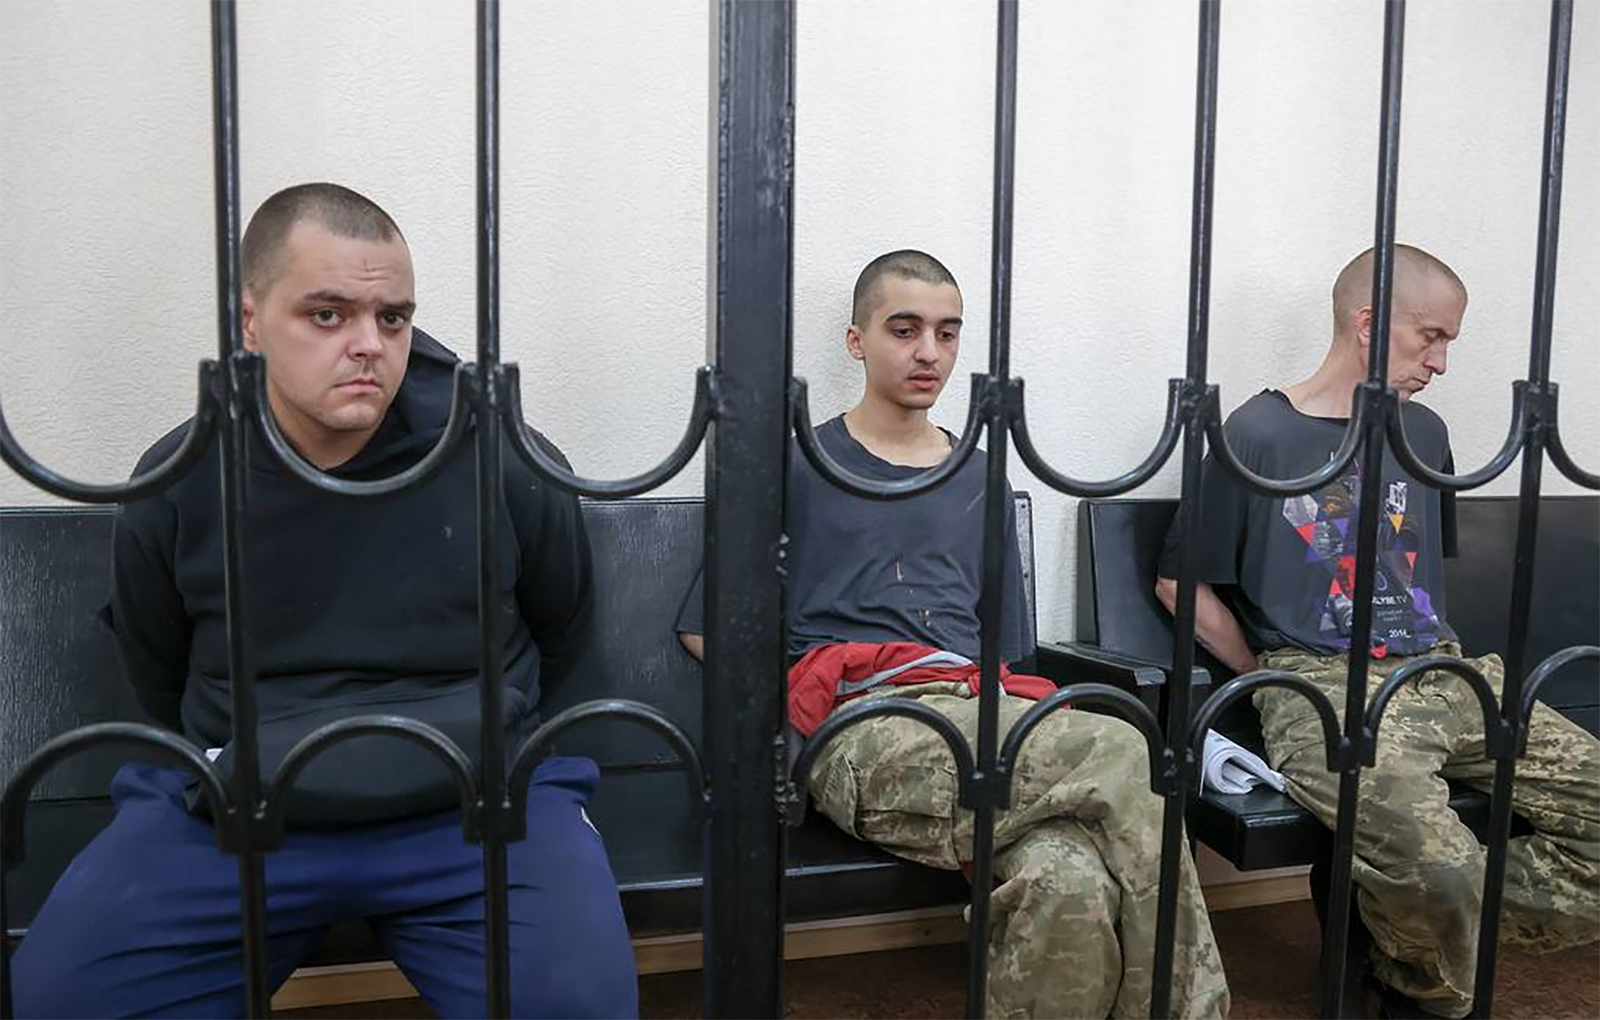 De izquierda a derecha: Aiden Aslin, Brahim Saadoune y Shaun Pinner fueron condenados a muerte el jueves.